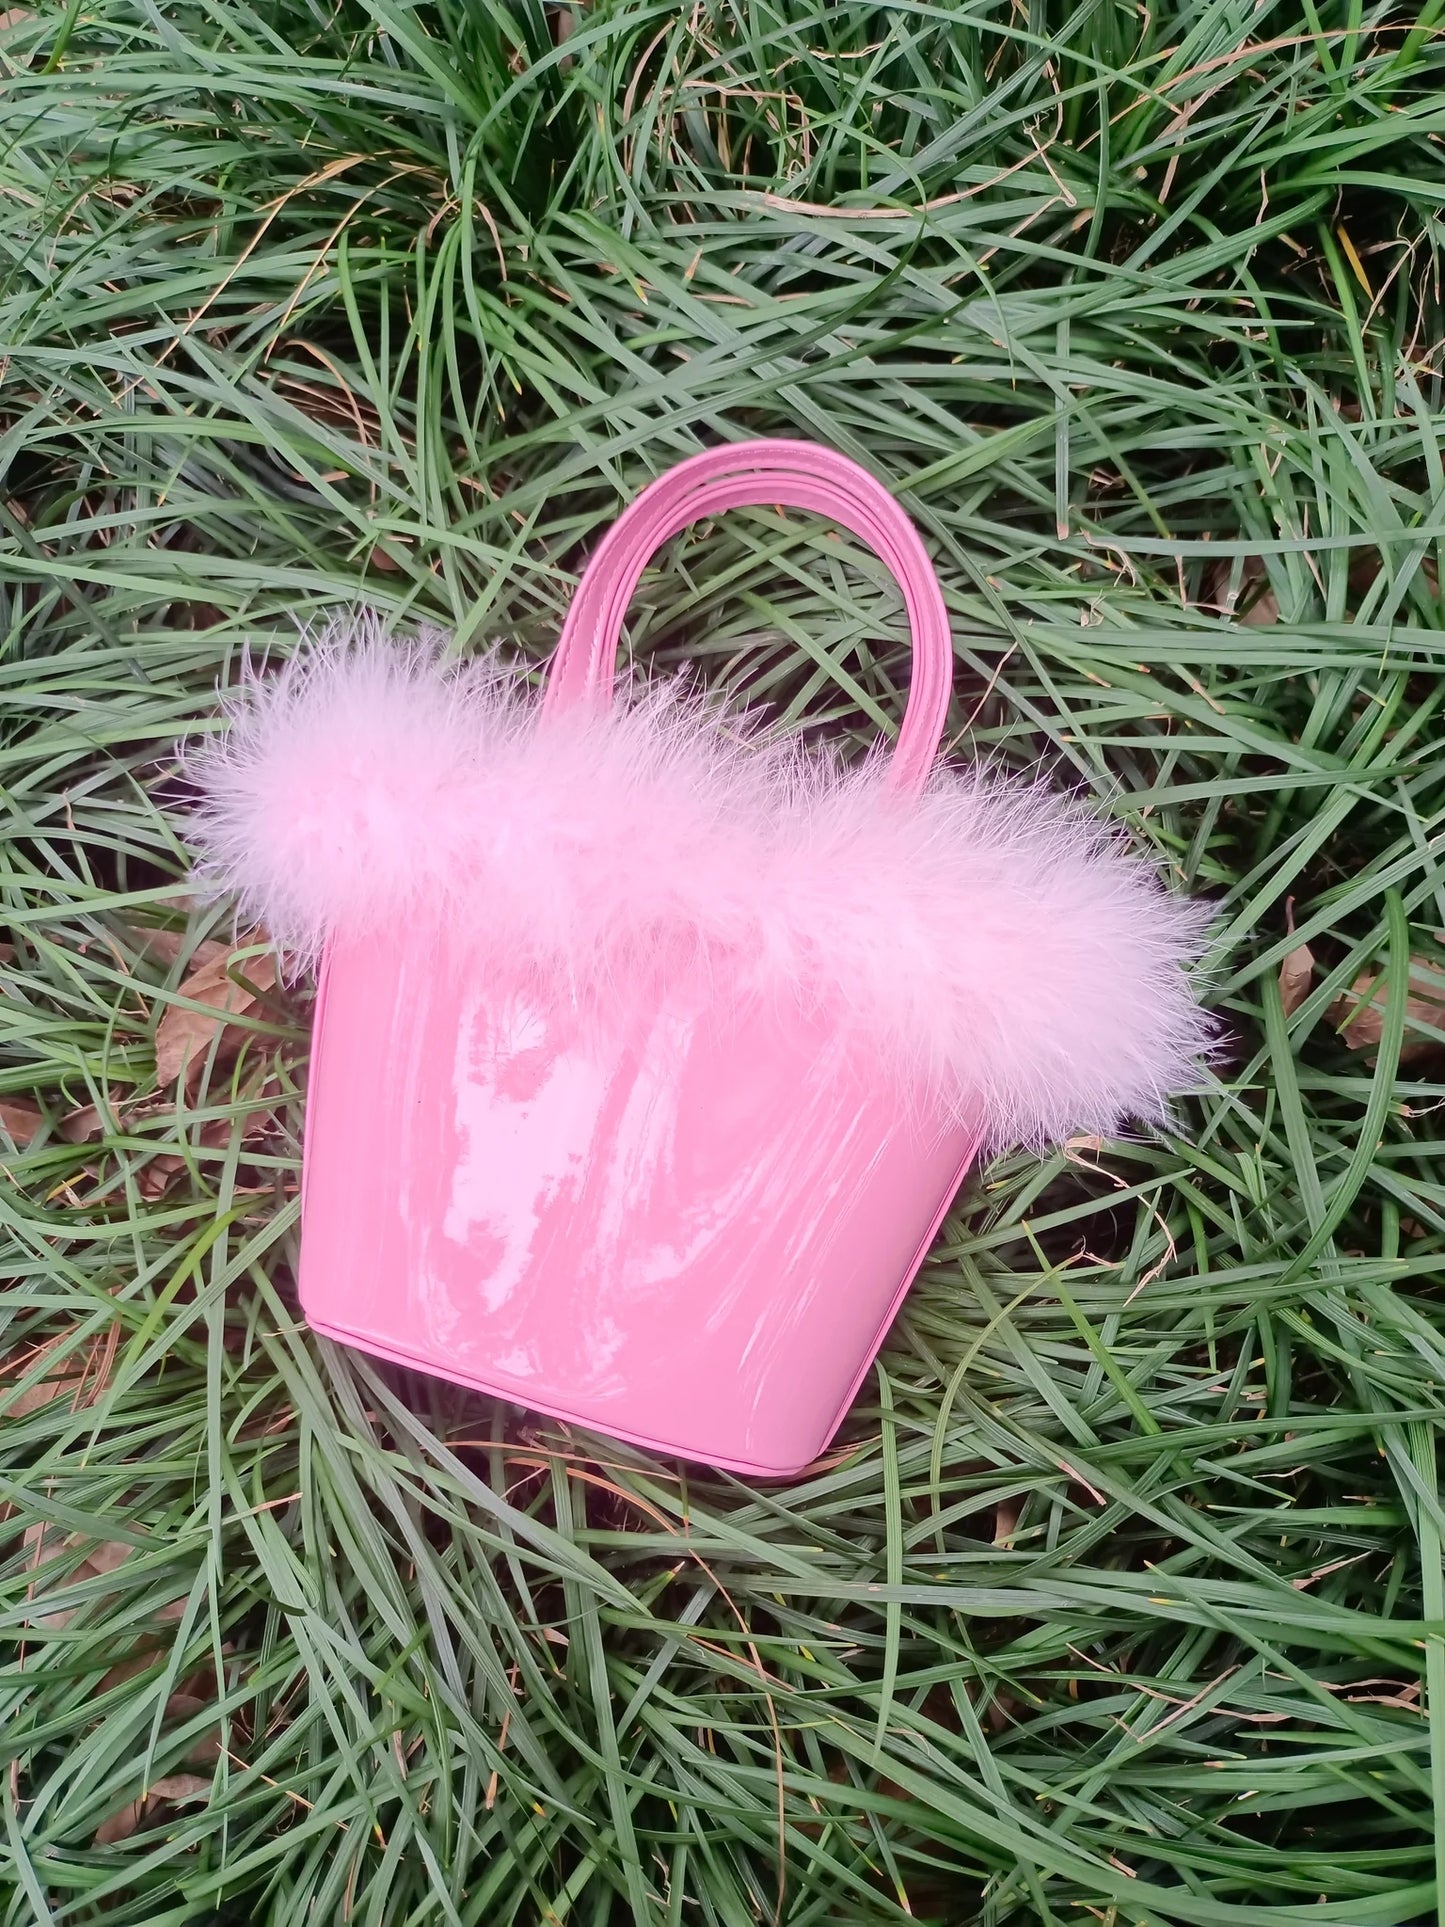 BA0028 pink fur bag